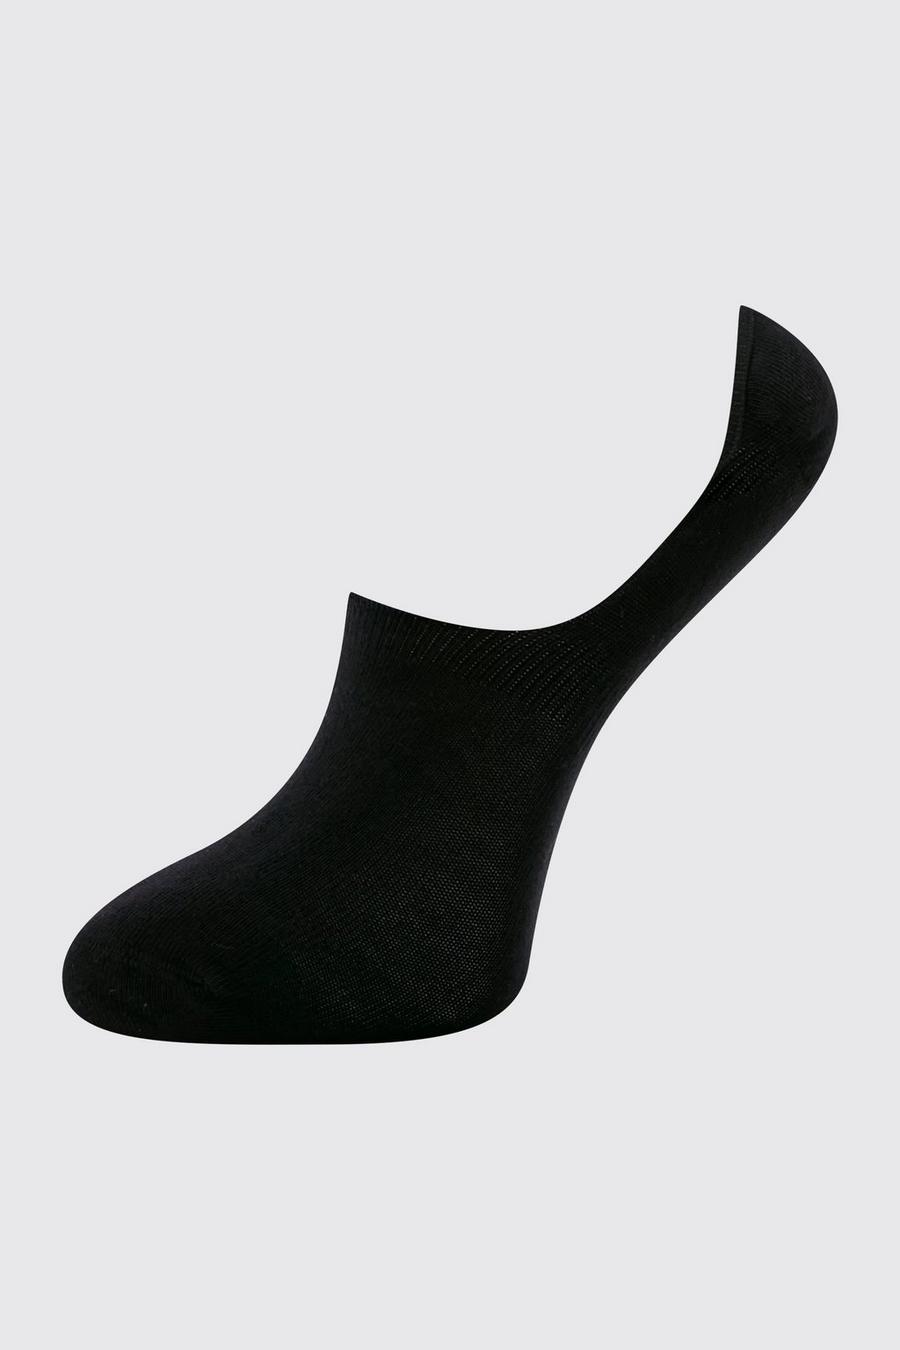 שחור negro מארז 3 זוגות גרביים בלתי נראים